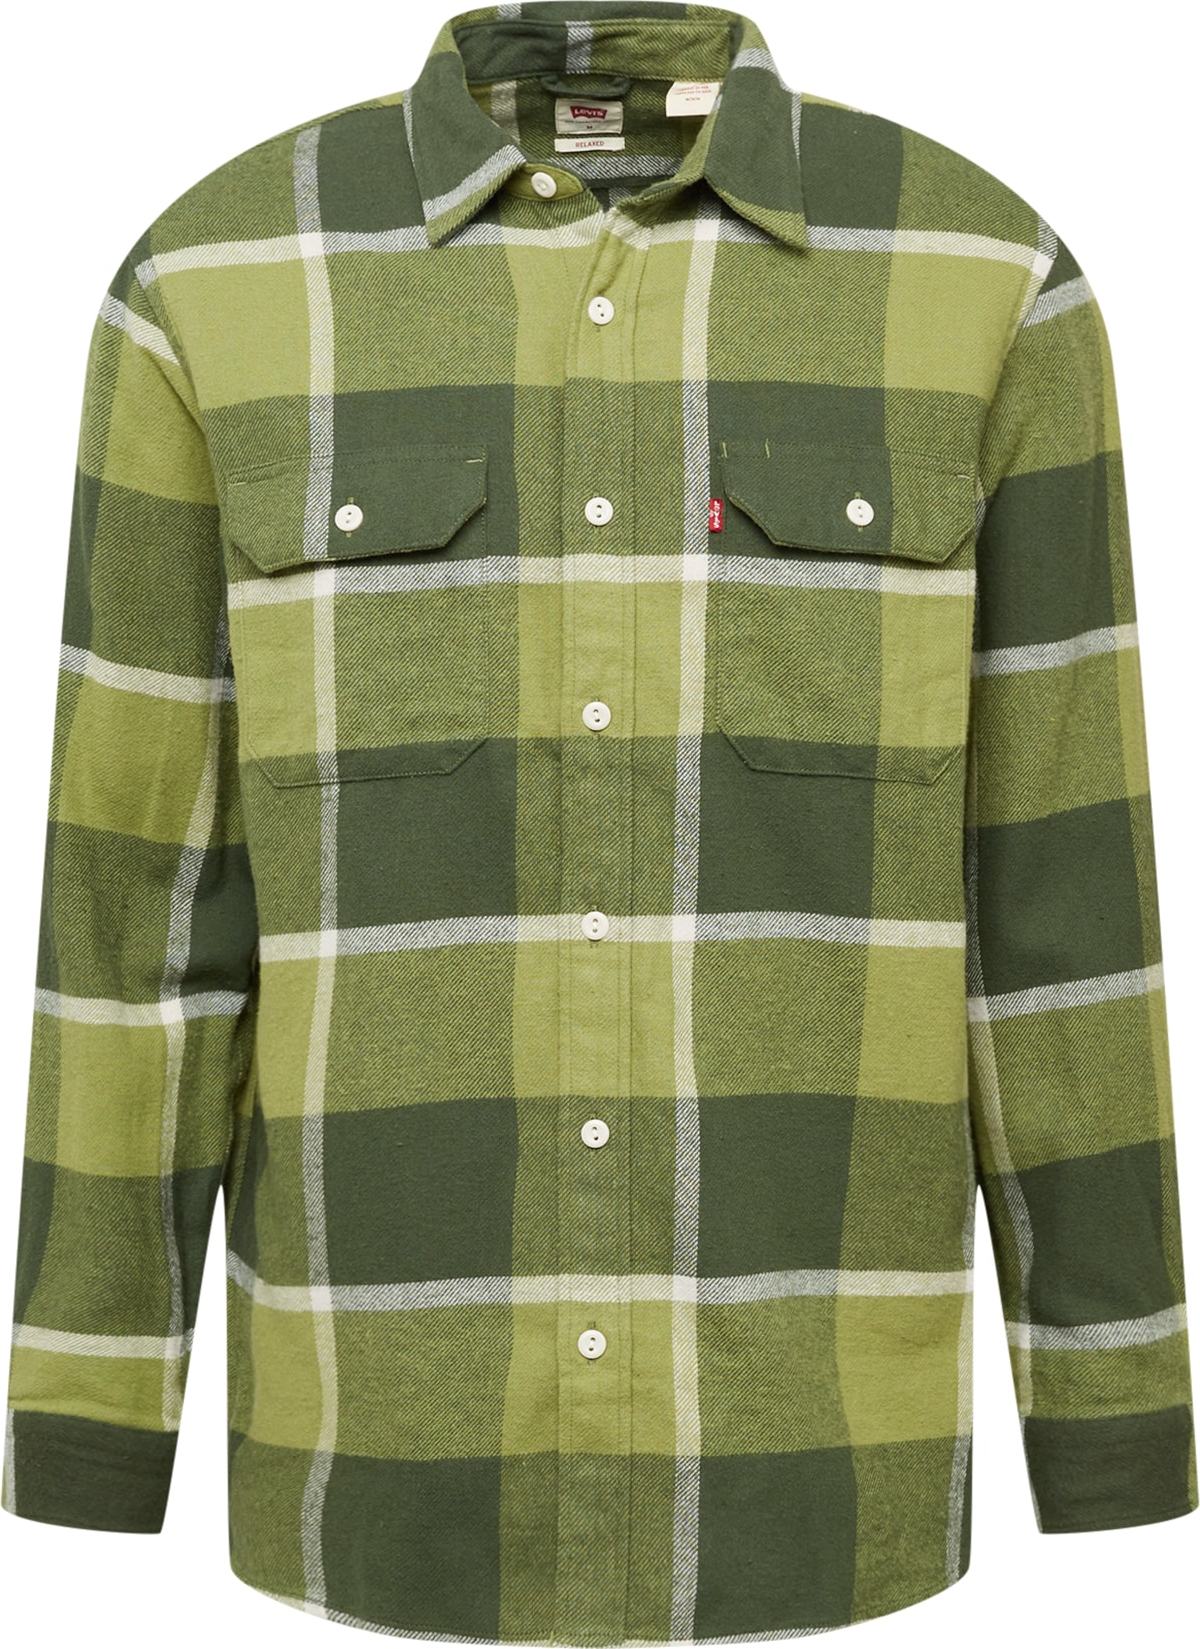 LEVI'S Košile 'Jackson' khaki / rákos / tmavě zelená / bílá